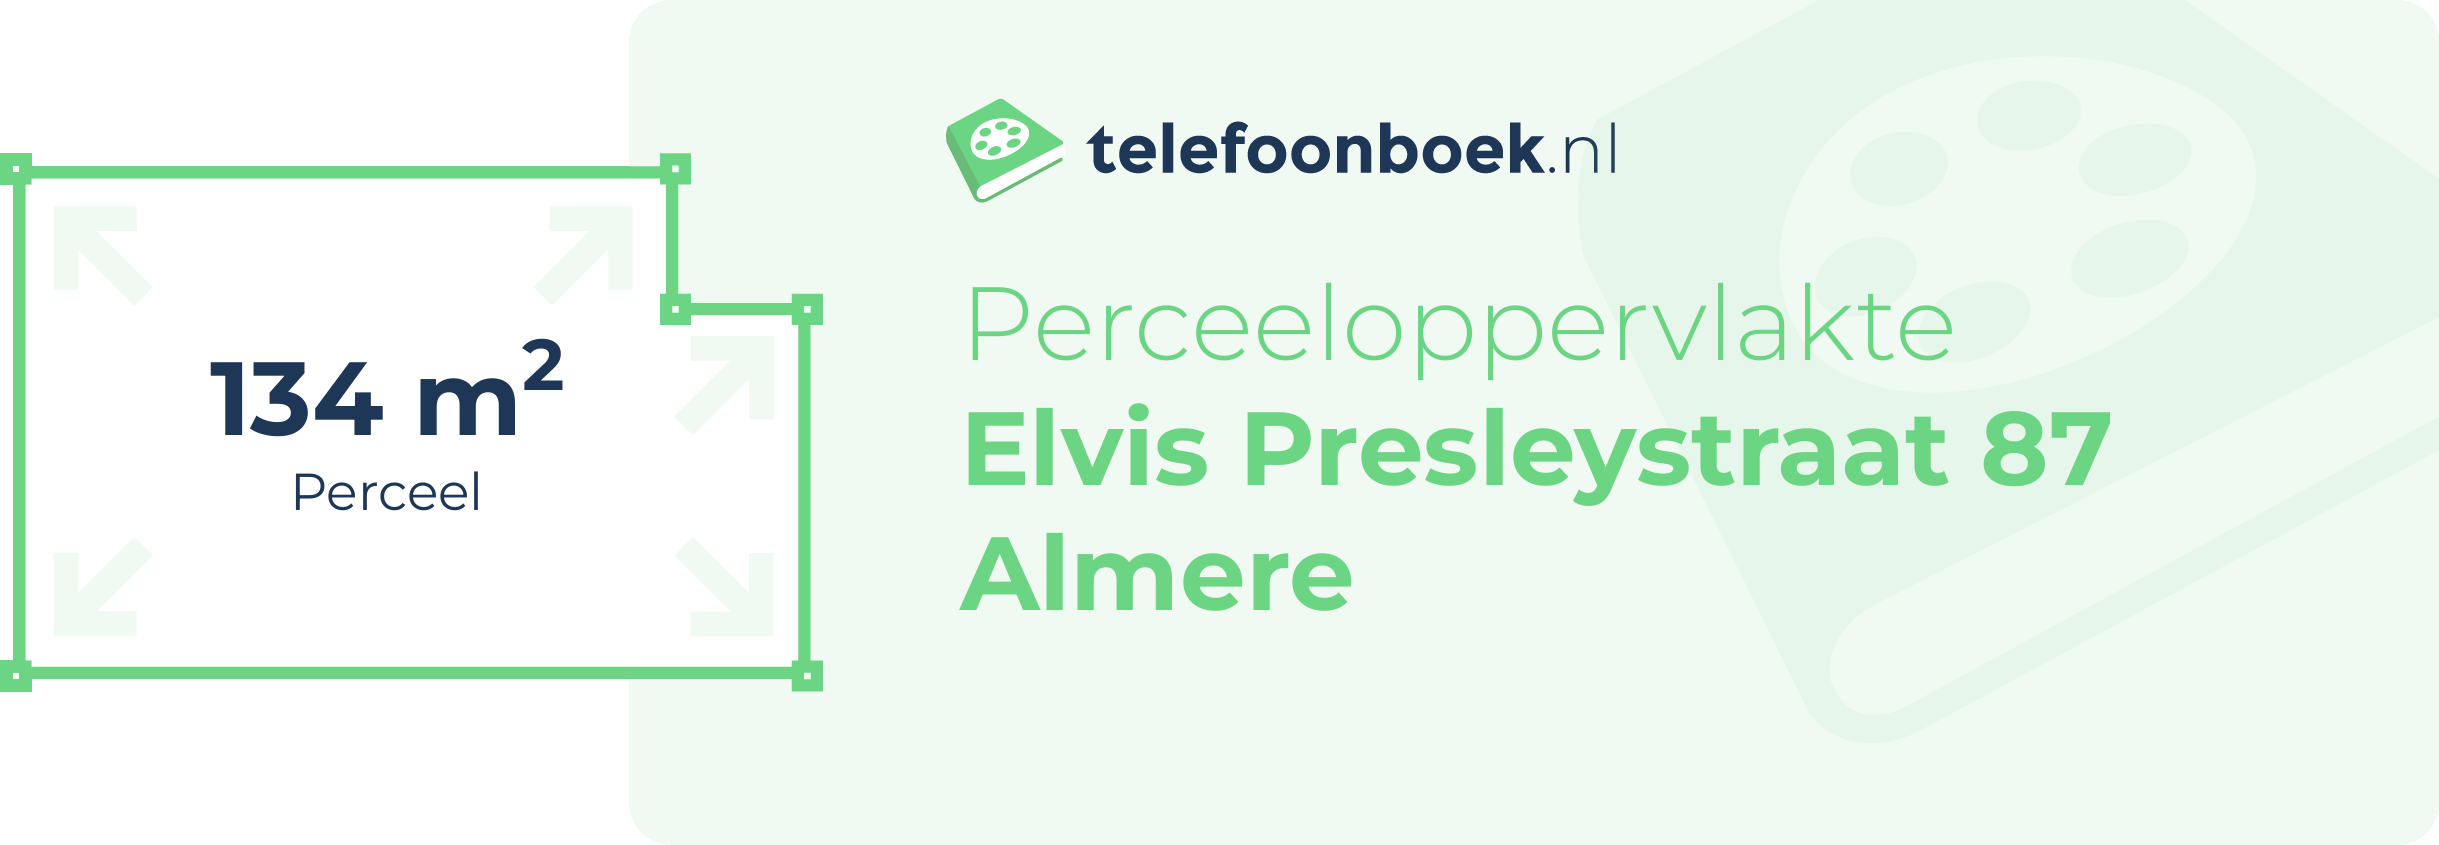 Perceeloppervlakte Elvis Presleystraat 87 Almere